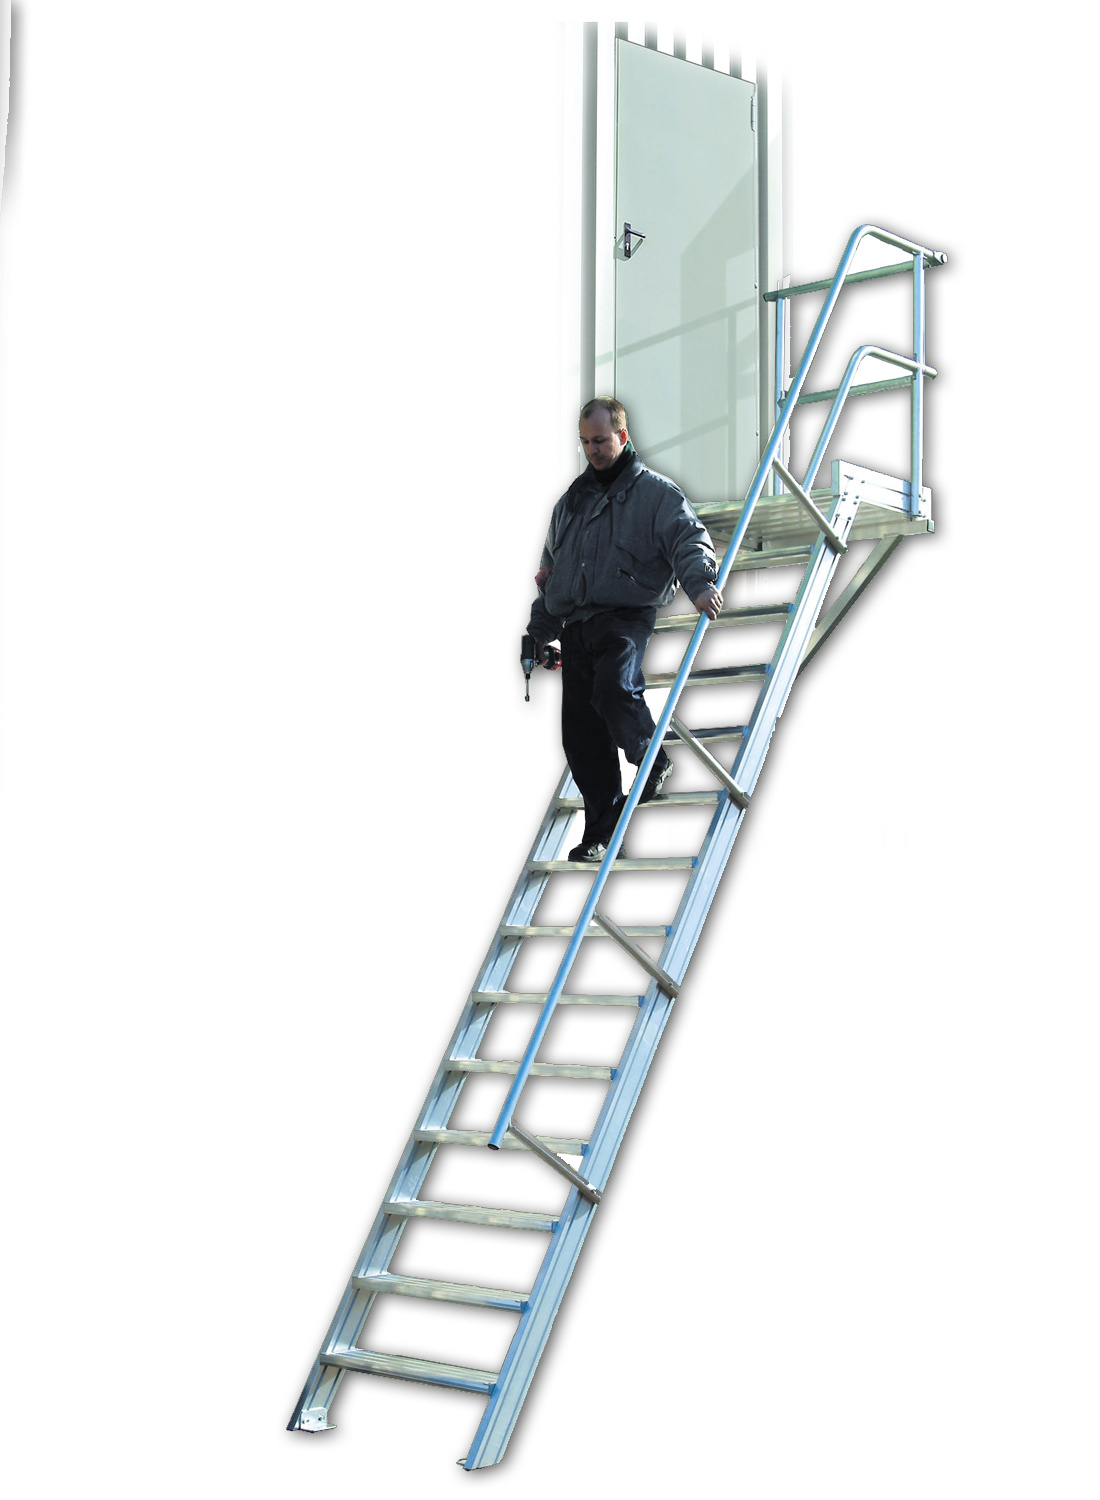 Euroline 45° Podesttreppe, 1000 mm Stufenbreite, 4 Stufen